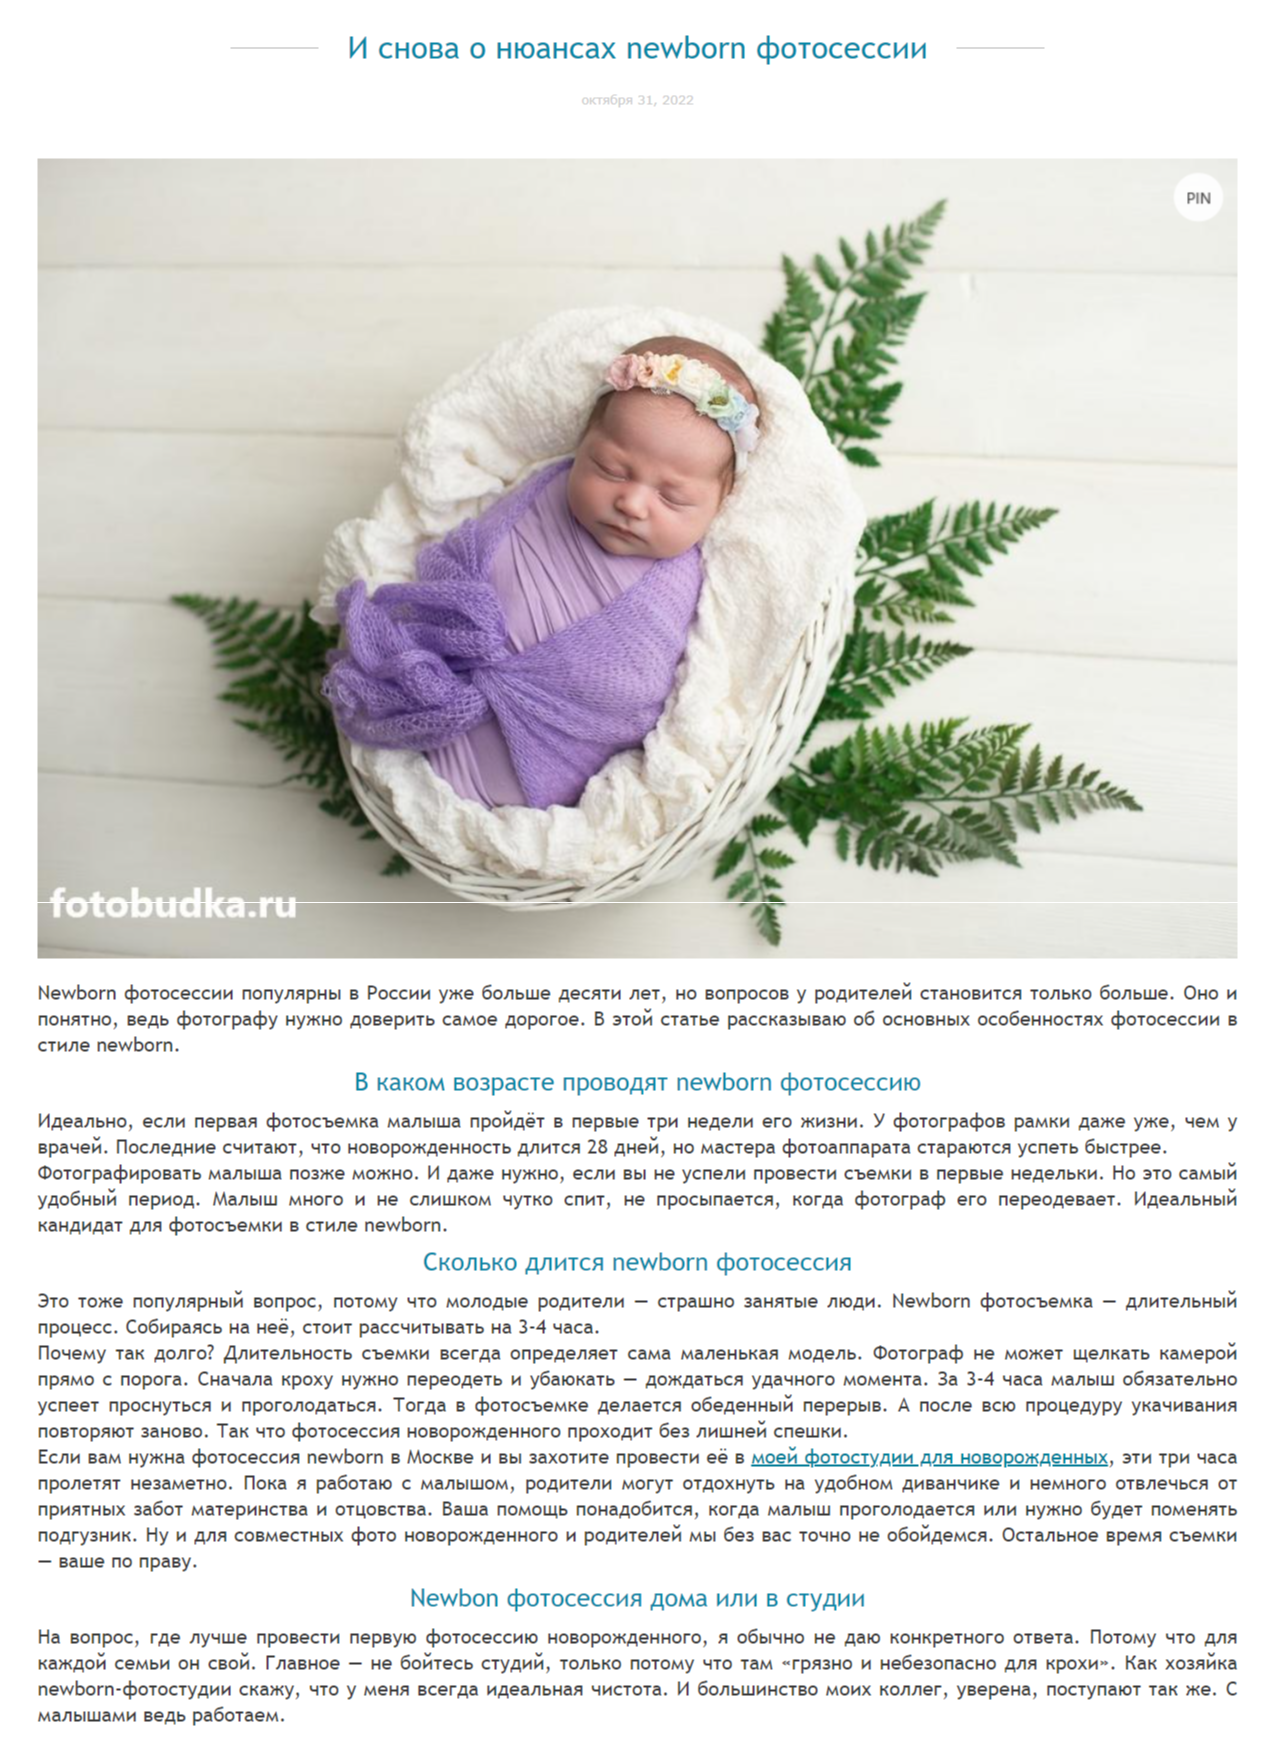 скриншот блог фотографа новорожденных